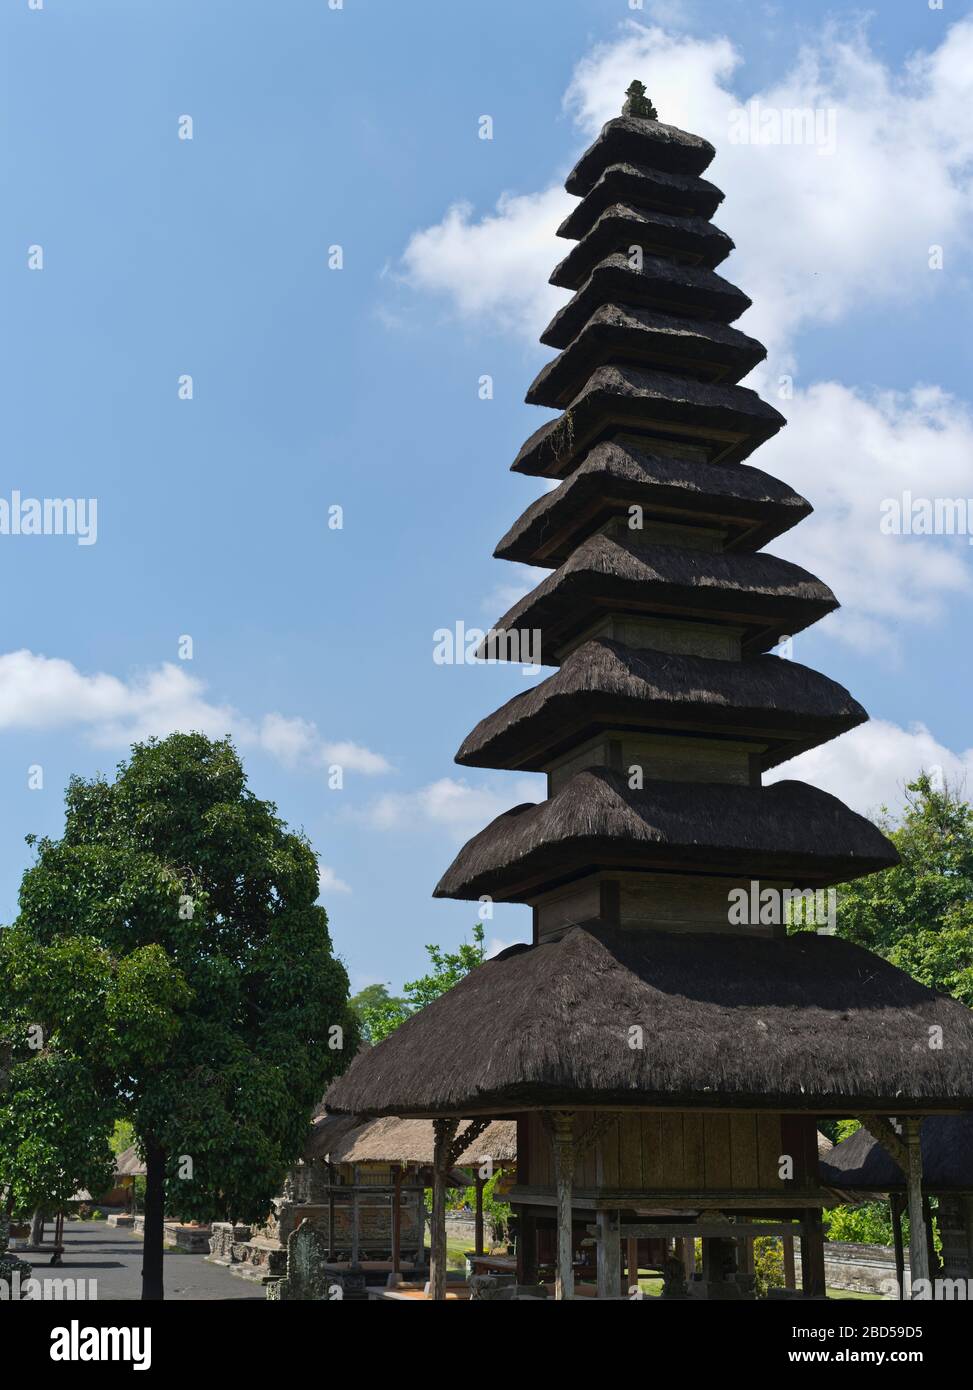 dh Pura Taman Ayun Royal Temple BALI INDONESIA Balinese Hindu Mengwi temples inner sanctum pelinggih meru tower turret Stock Photo